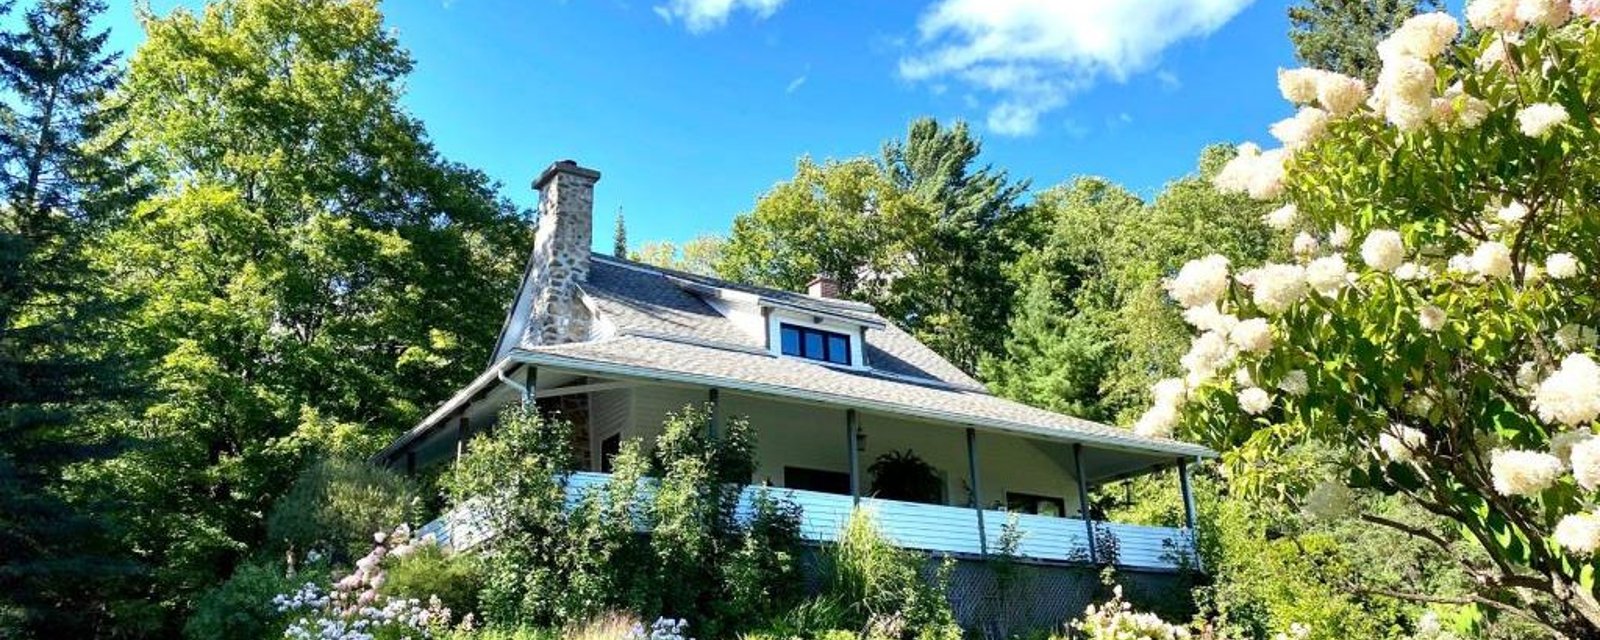 Cottage au cachet centenaire entouré de nature dans les Laurentides